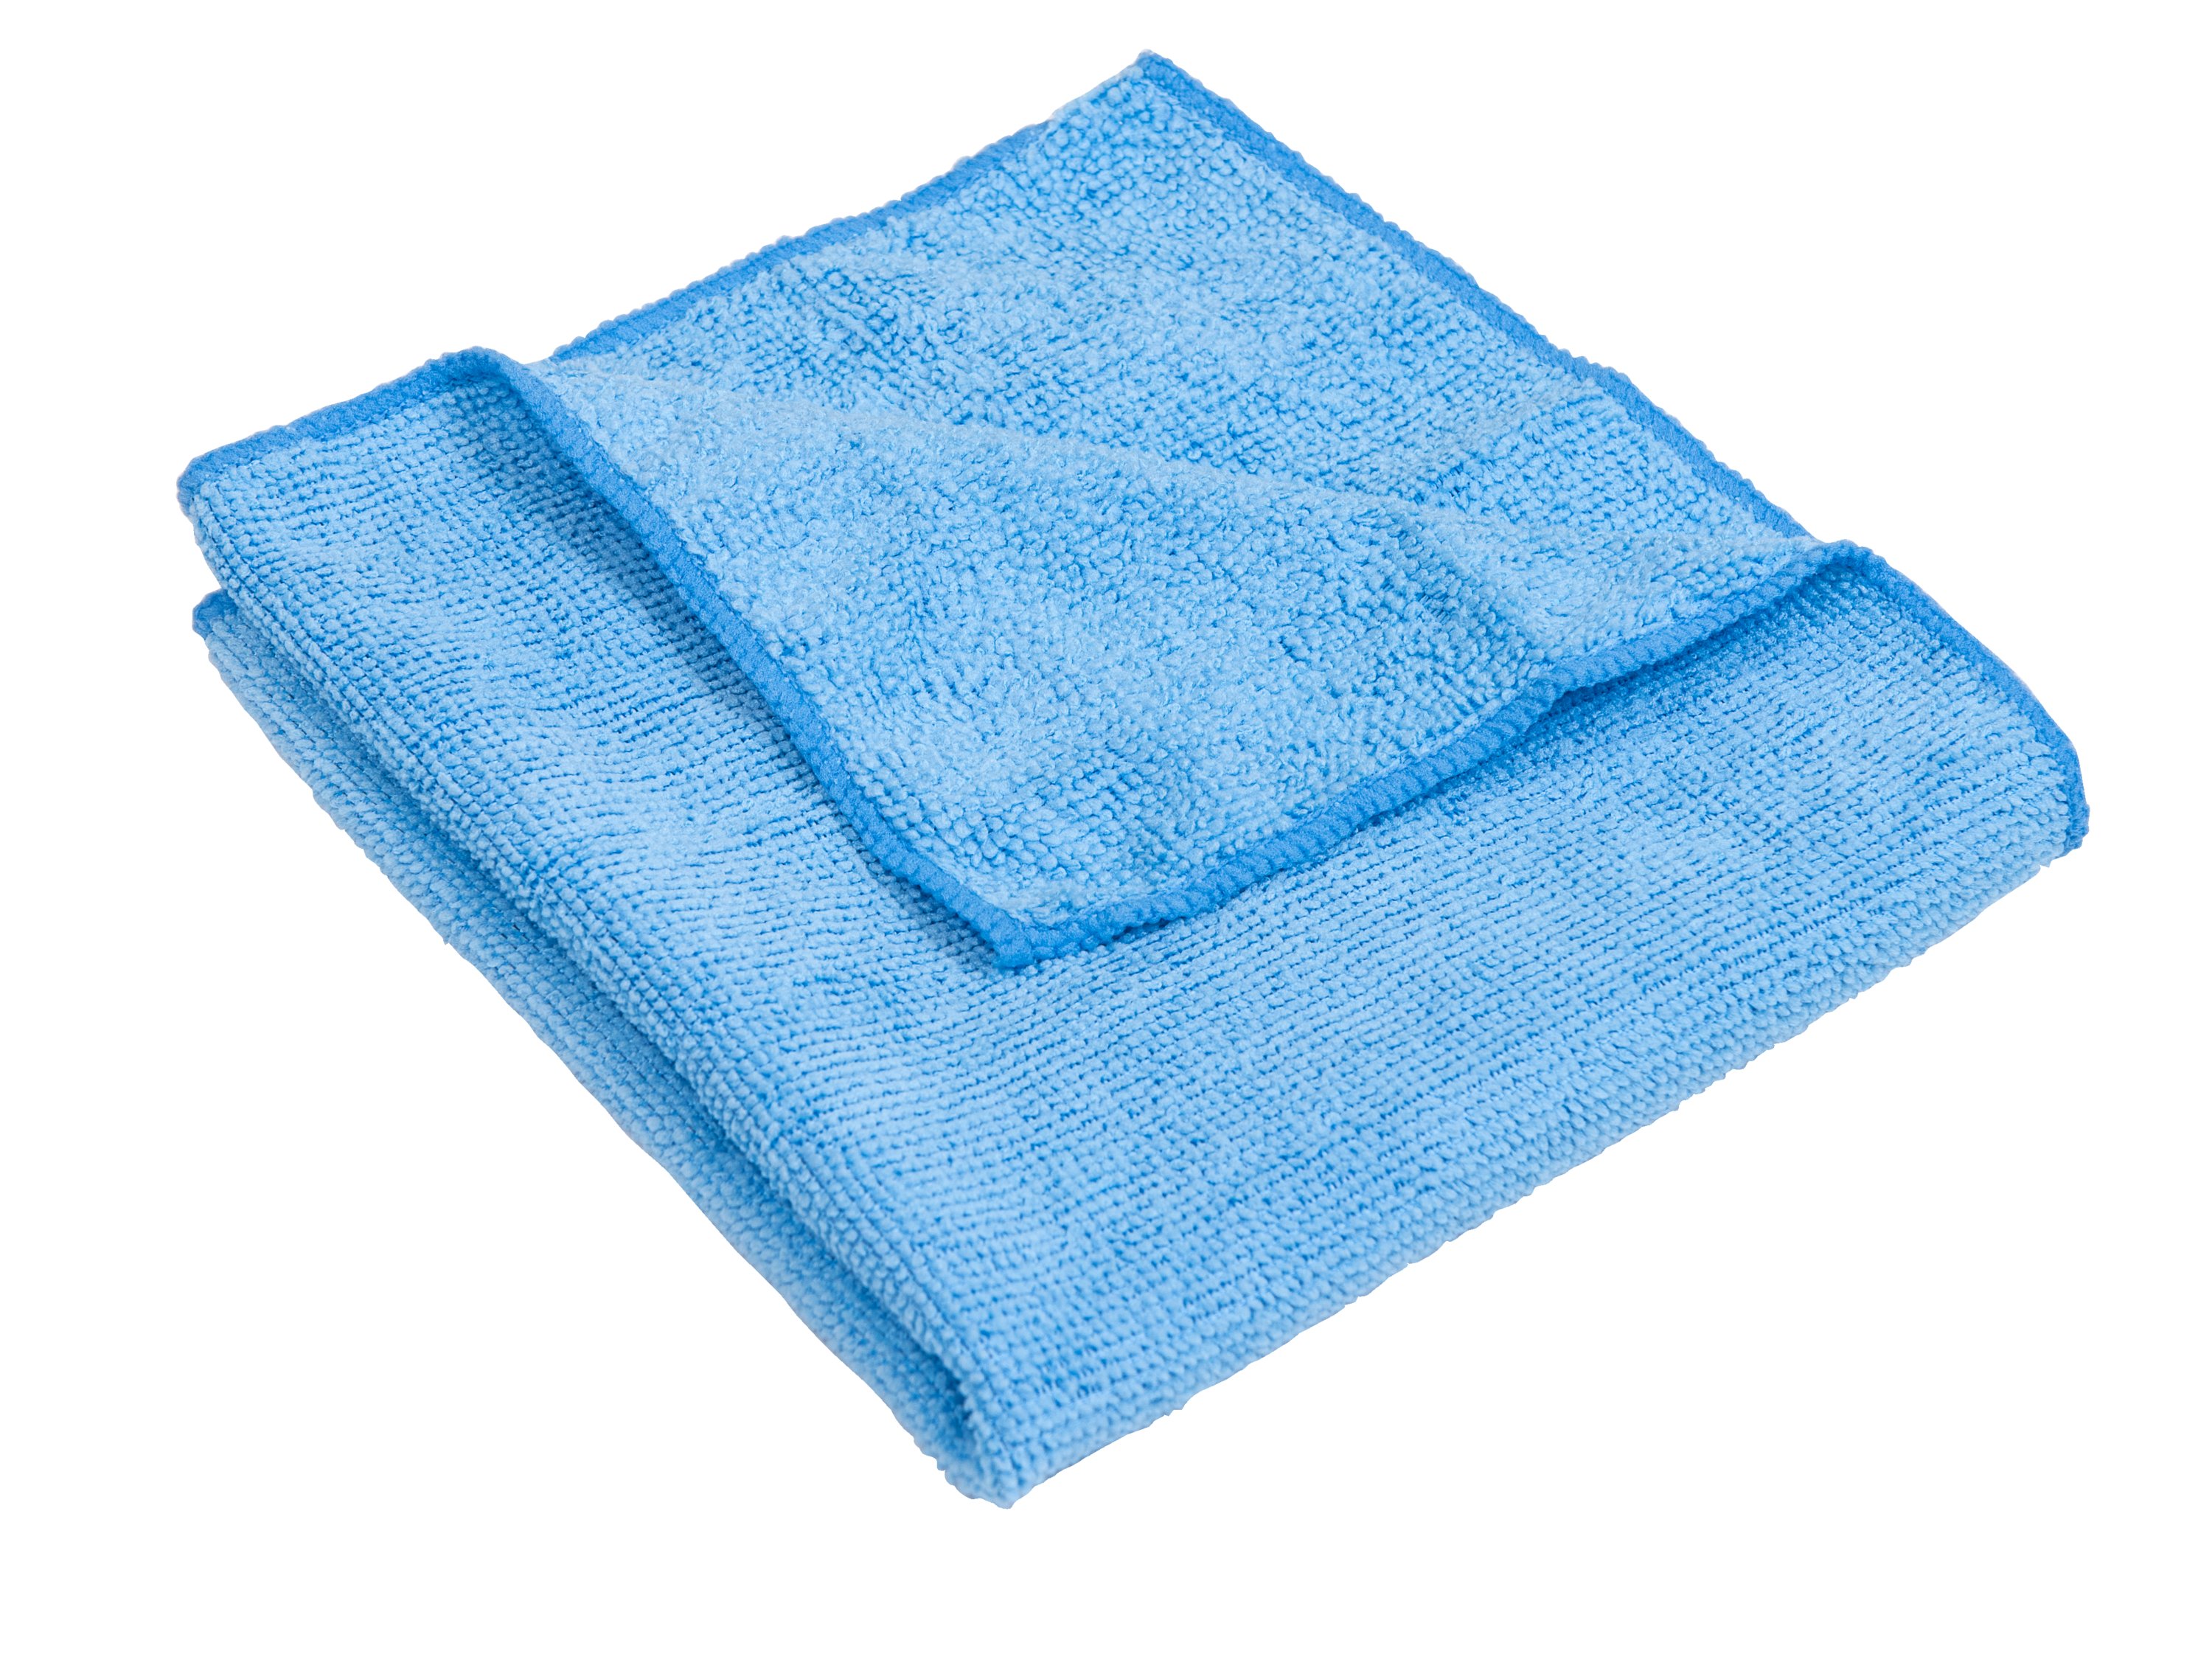 Quickie® Microfiber Towels 24 Pack